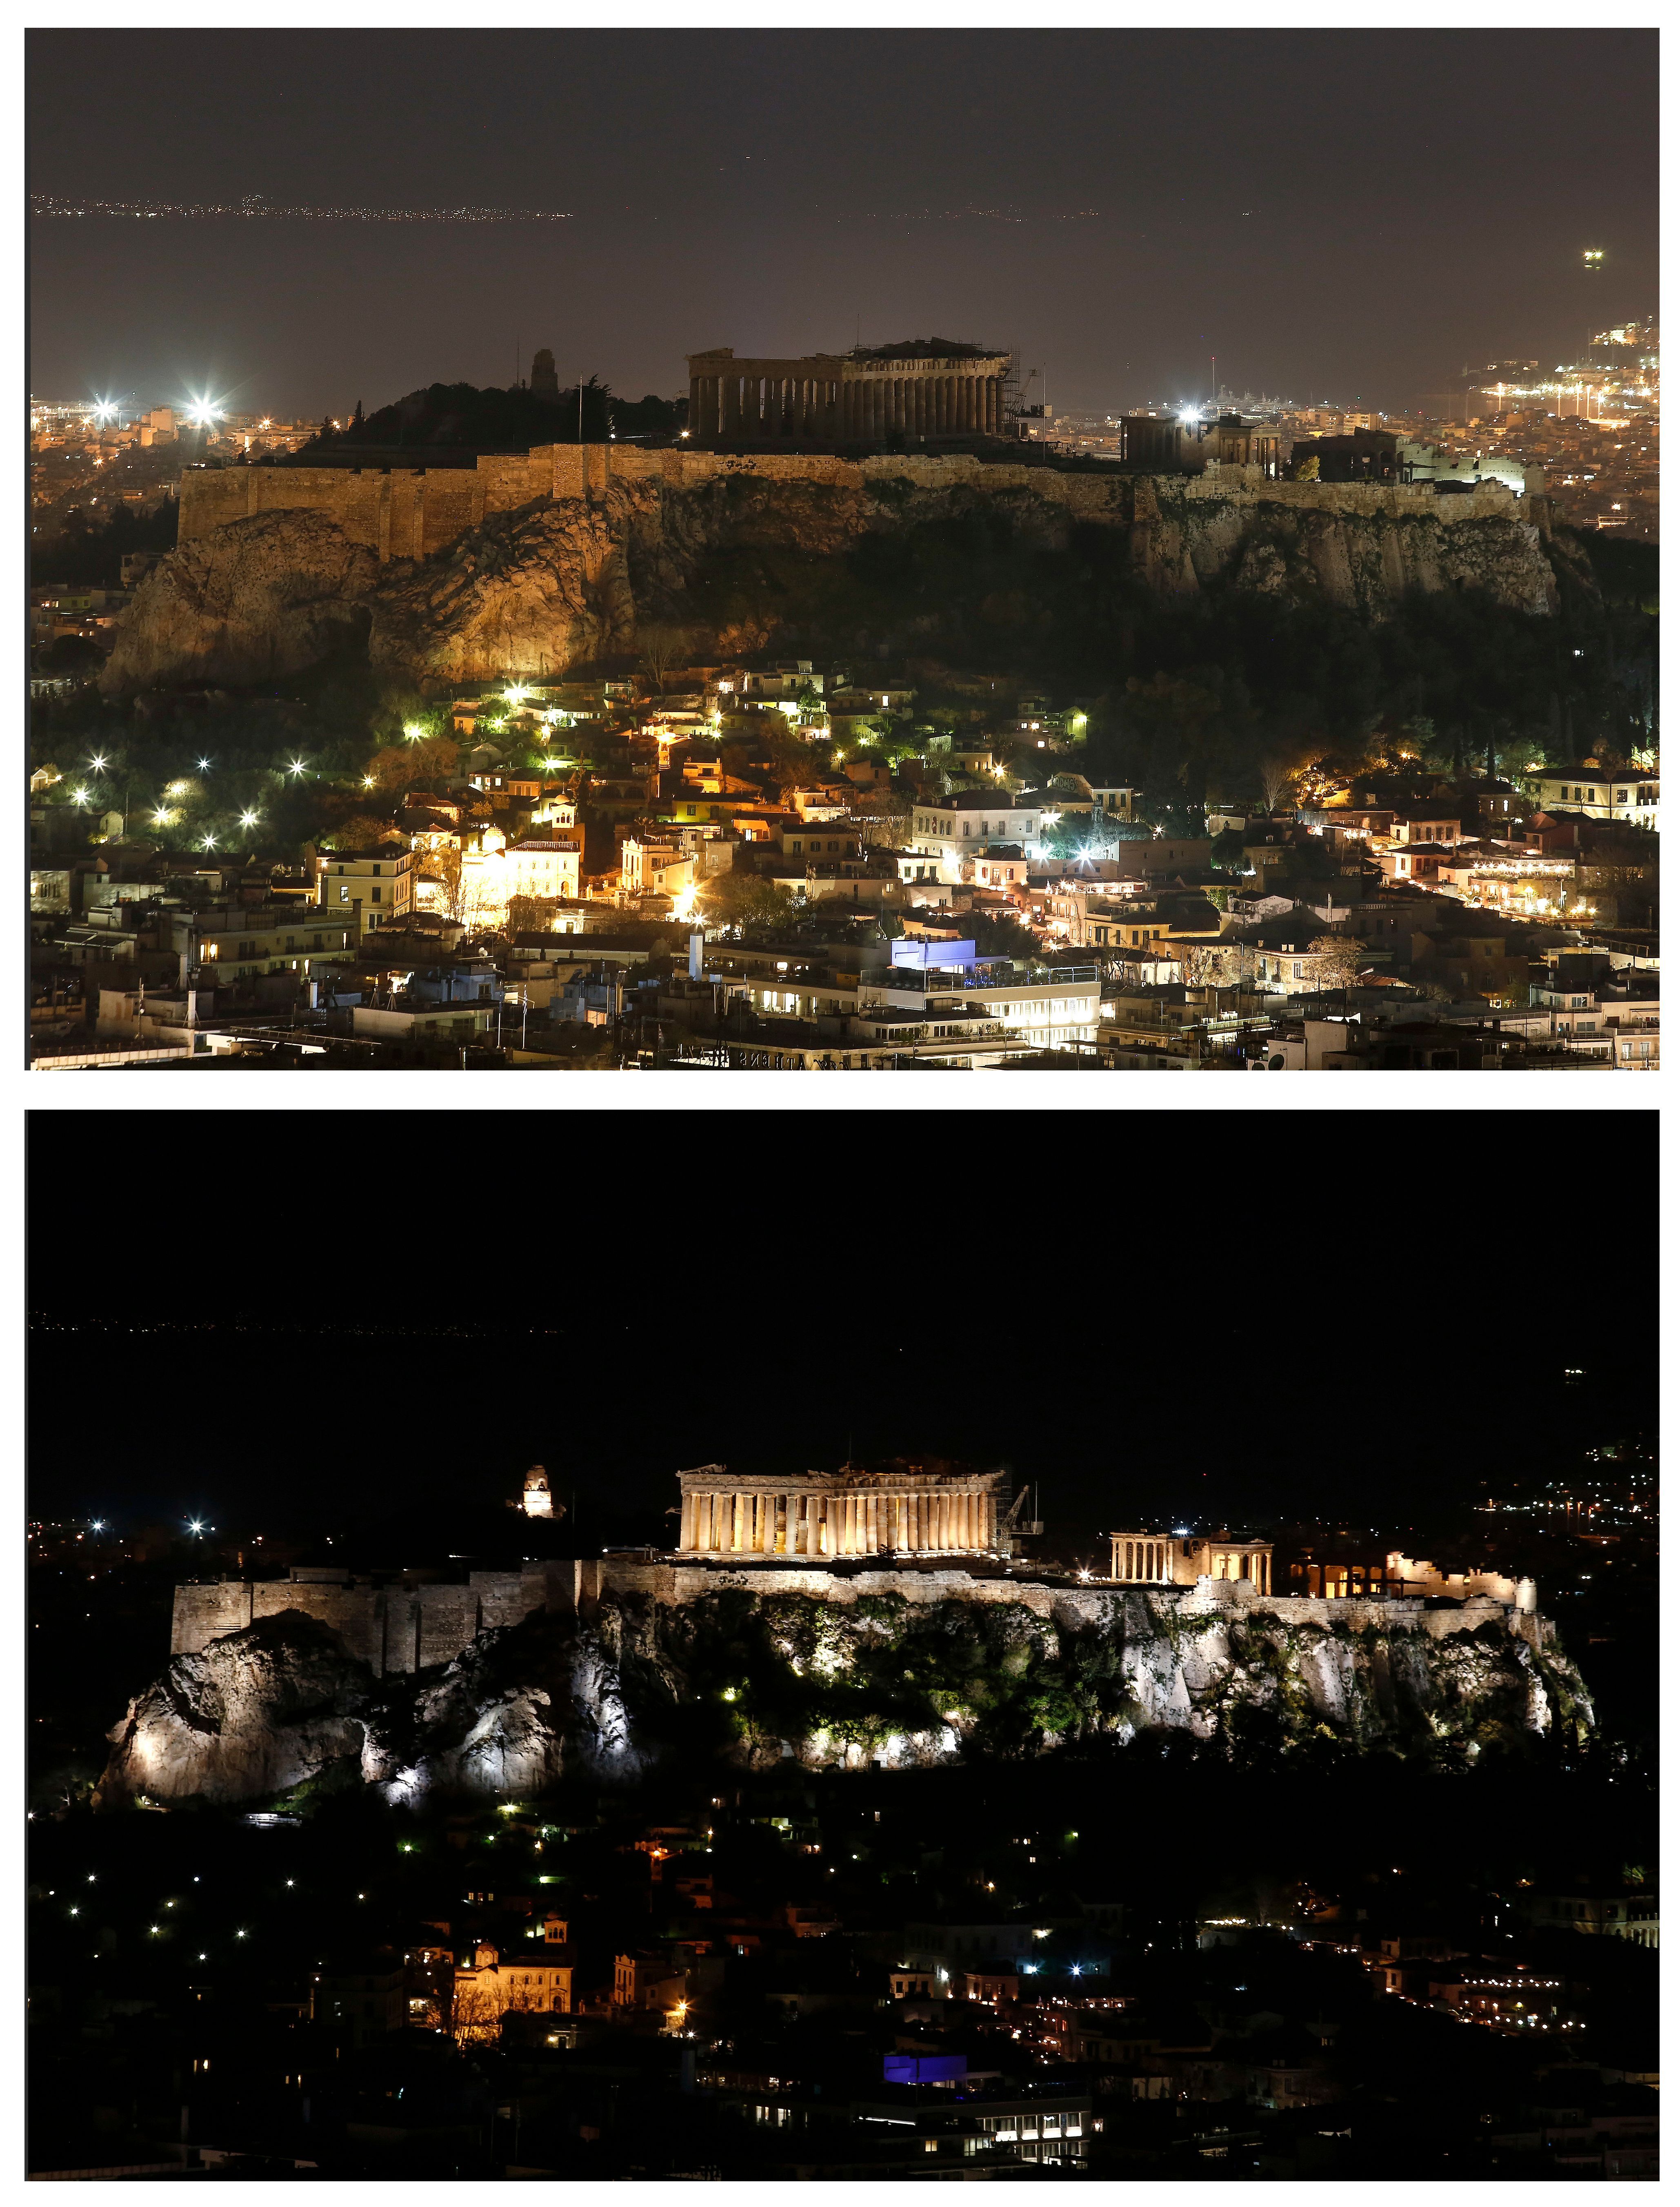 Der im Jahr 447 v. Chr. erbaute Parthenon auf der Akropolis in Athen ist eines der bekanntesten Bauwerke des alten Griechenlands. Die Stadt Athen hat nicht nur die Lichter des Parthenon für die Earth Hour abgeschaltet, sondern ihre Bürger auch angehalten, bei der Aktion mitzumachen.